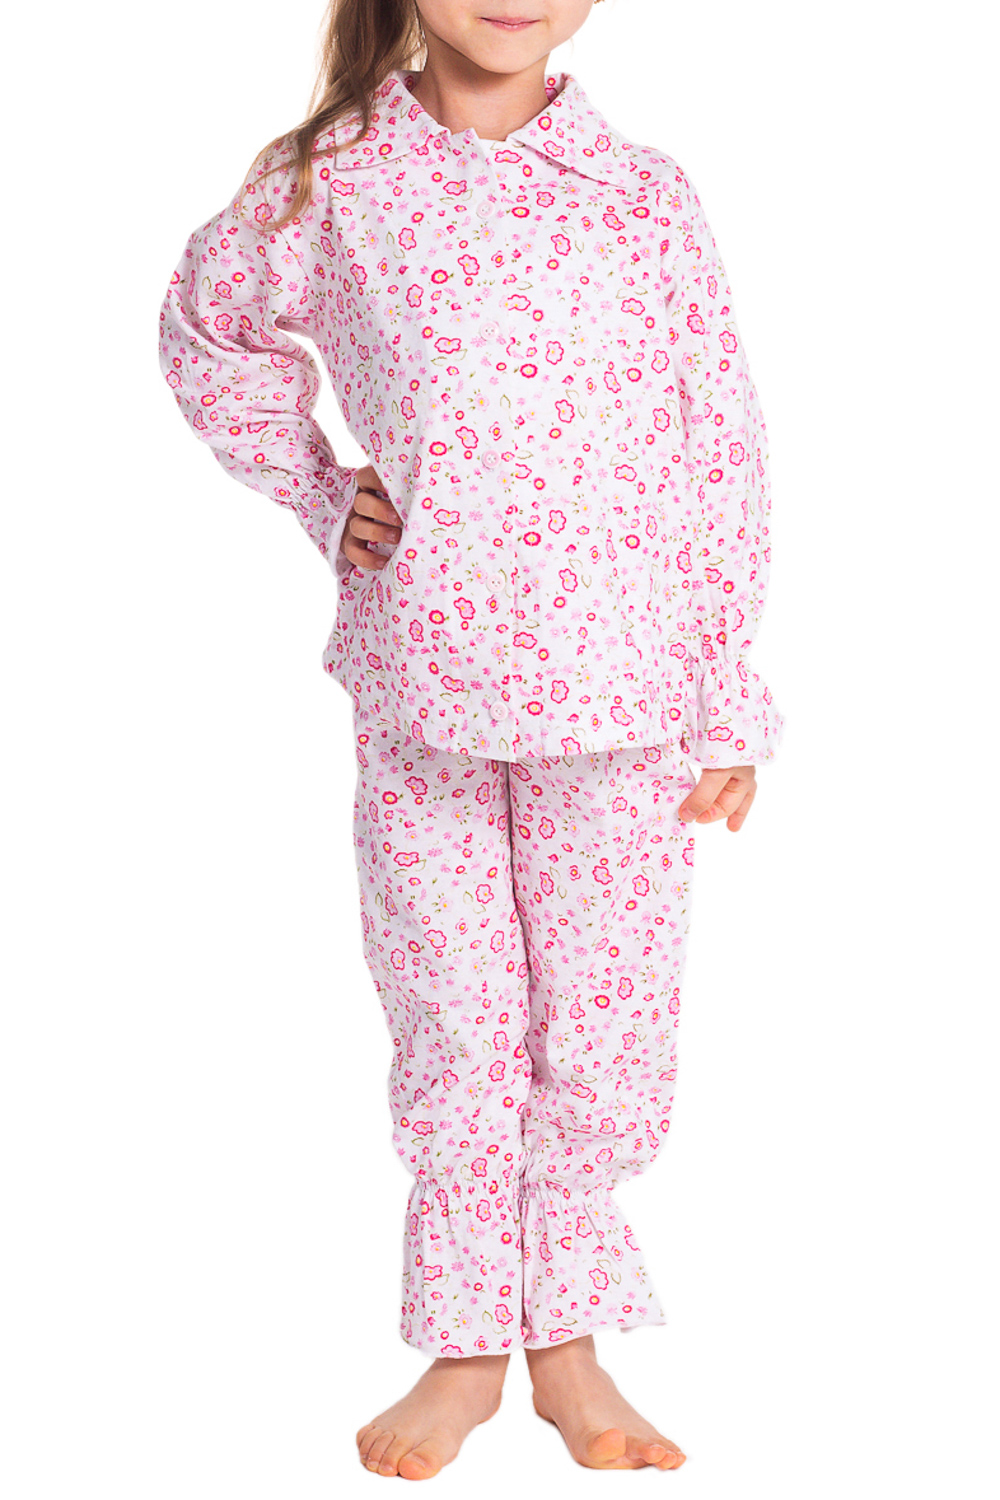 Валберис пижама для девочек. Пижама на пуговицах для девочки. Хлопковая пижама для девочки. Пижама детская для девочки. Пижамы детские на пуговицах.